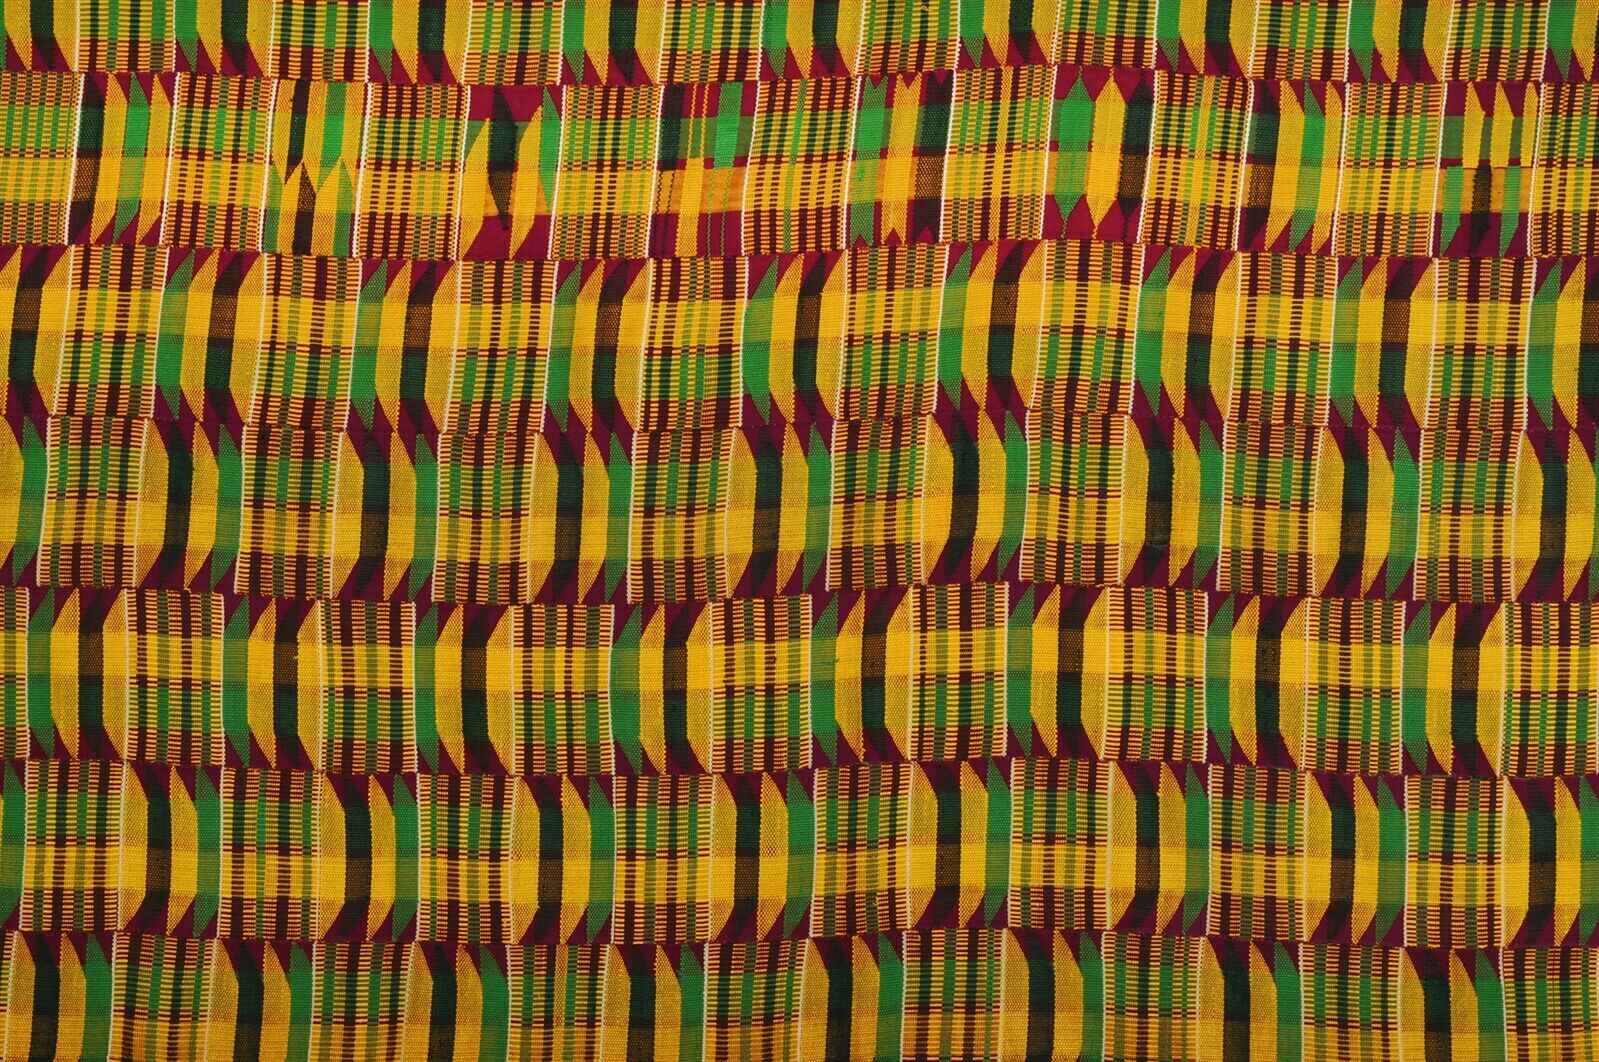 Ткань ручной работы Ashanti Kente Ghana Asante Африканский декоративный текстиль ручной работы - Tribalgh